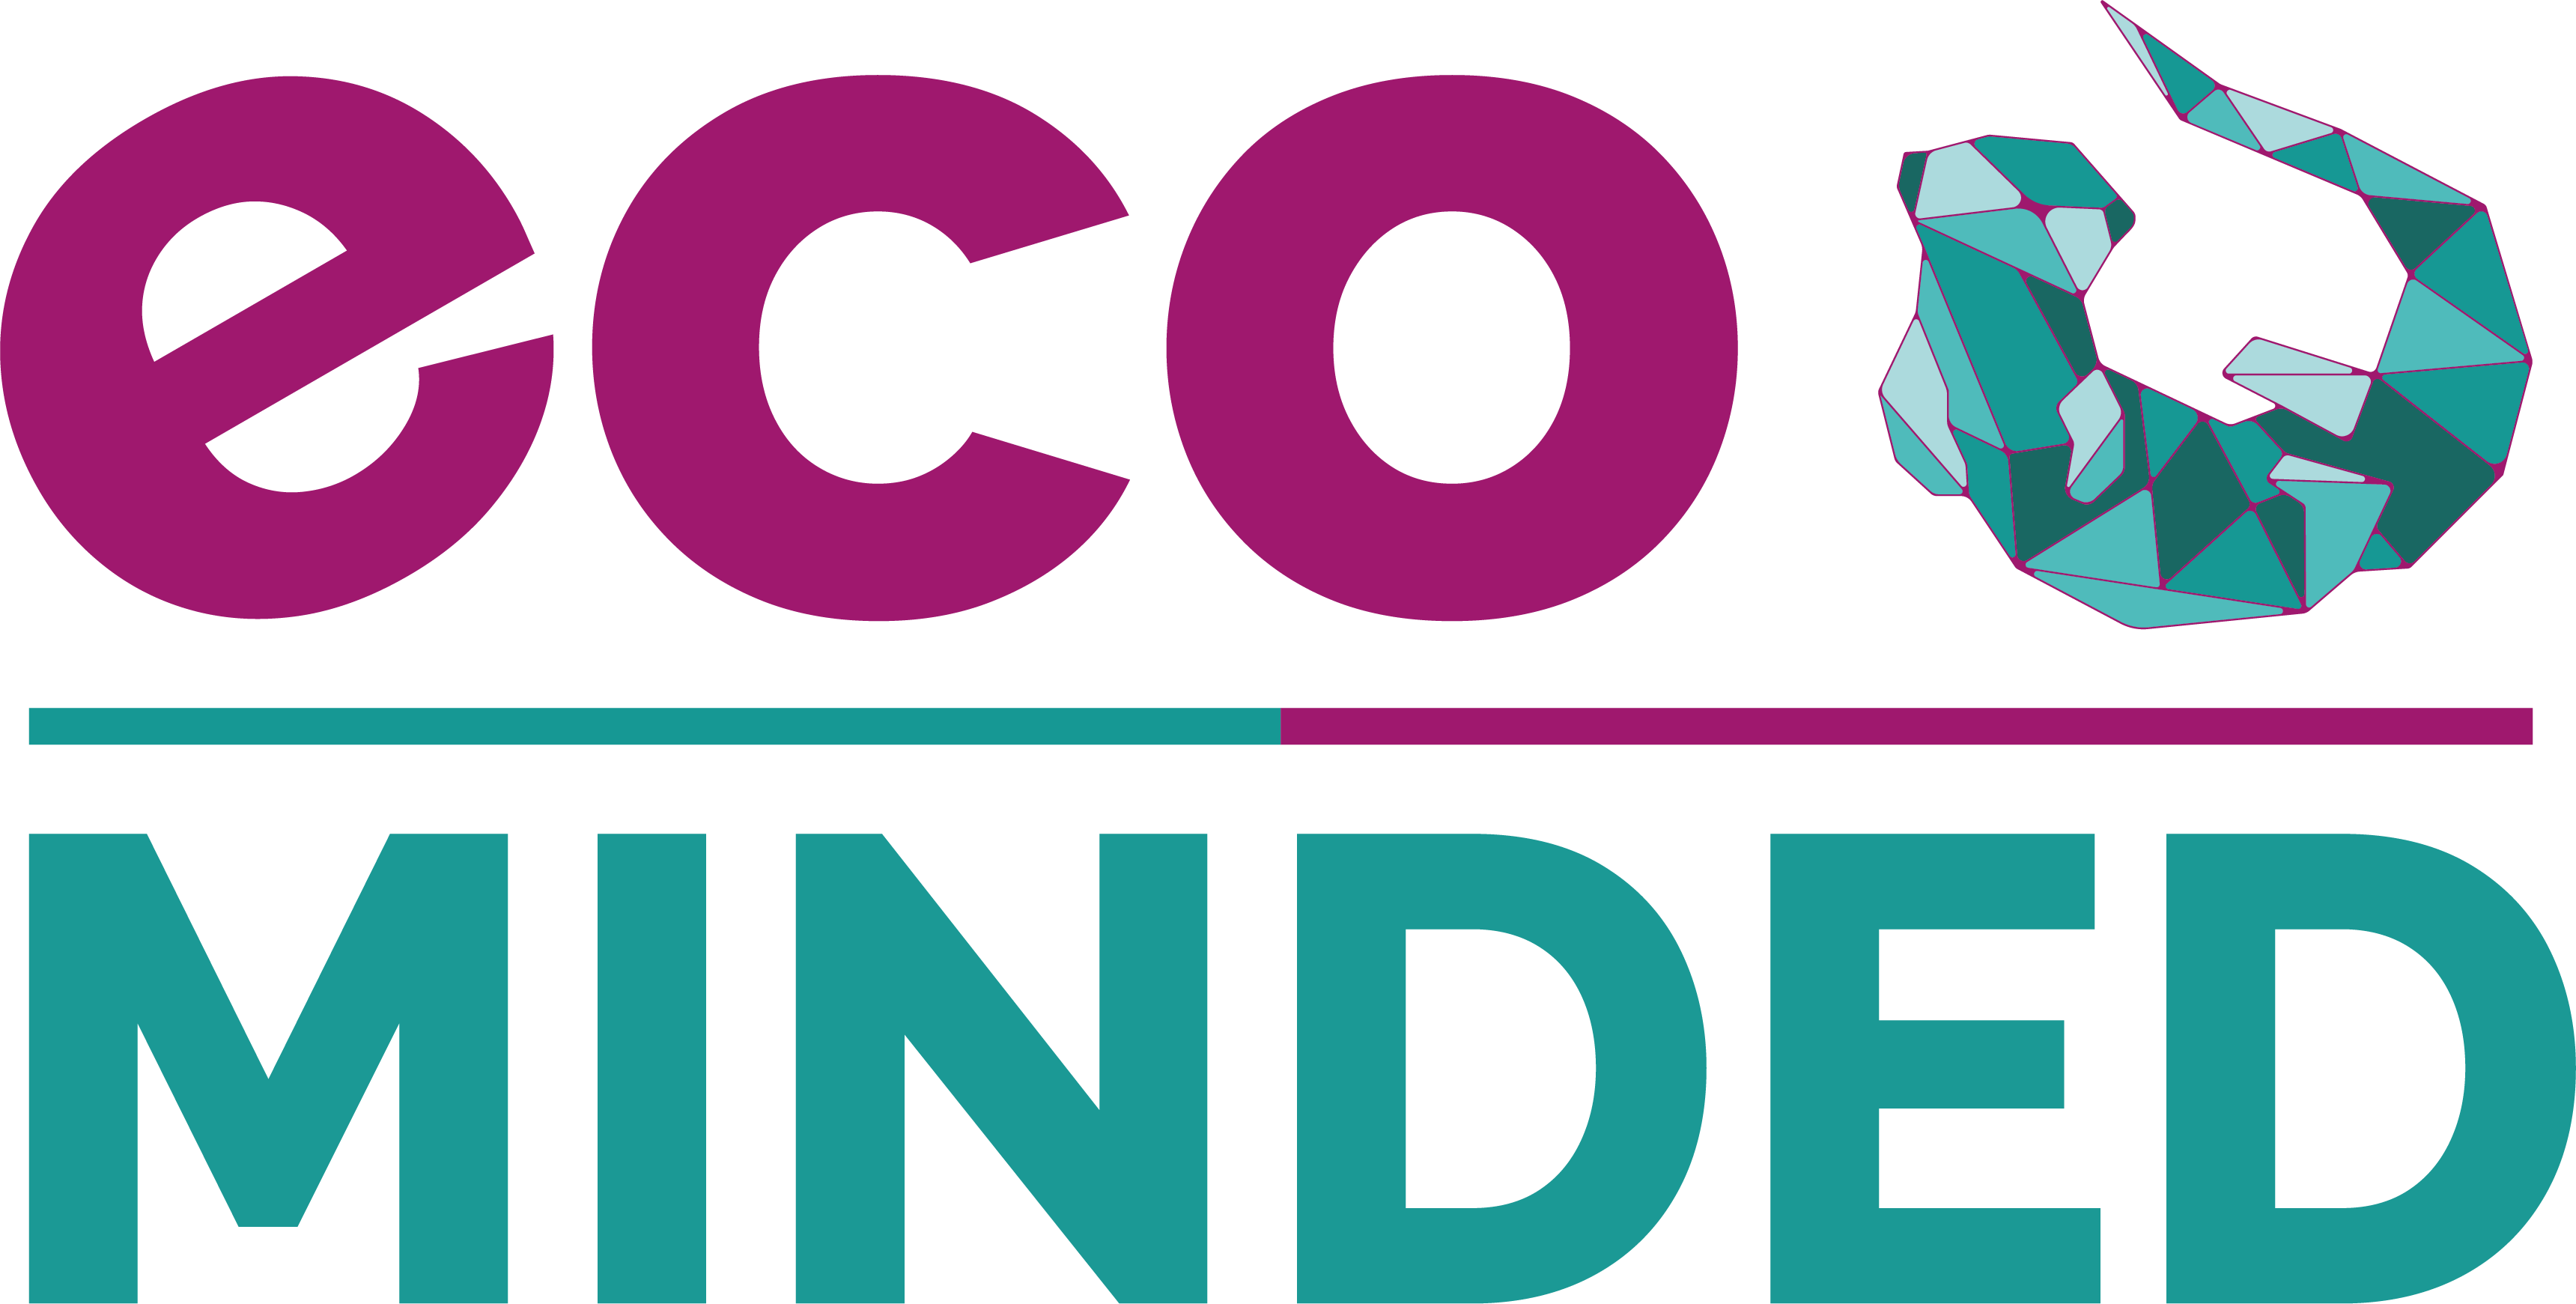 eco-minded.media Logo